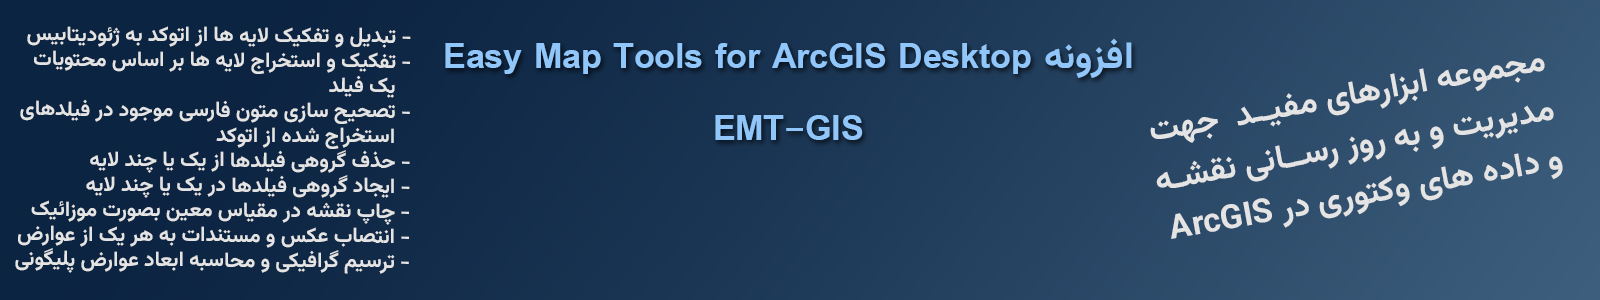 افزونه Easy Map Tools for ArcGIS Desktop